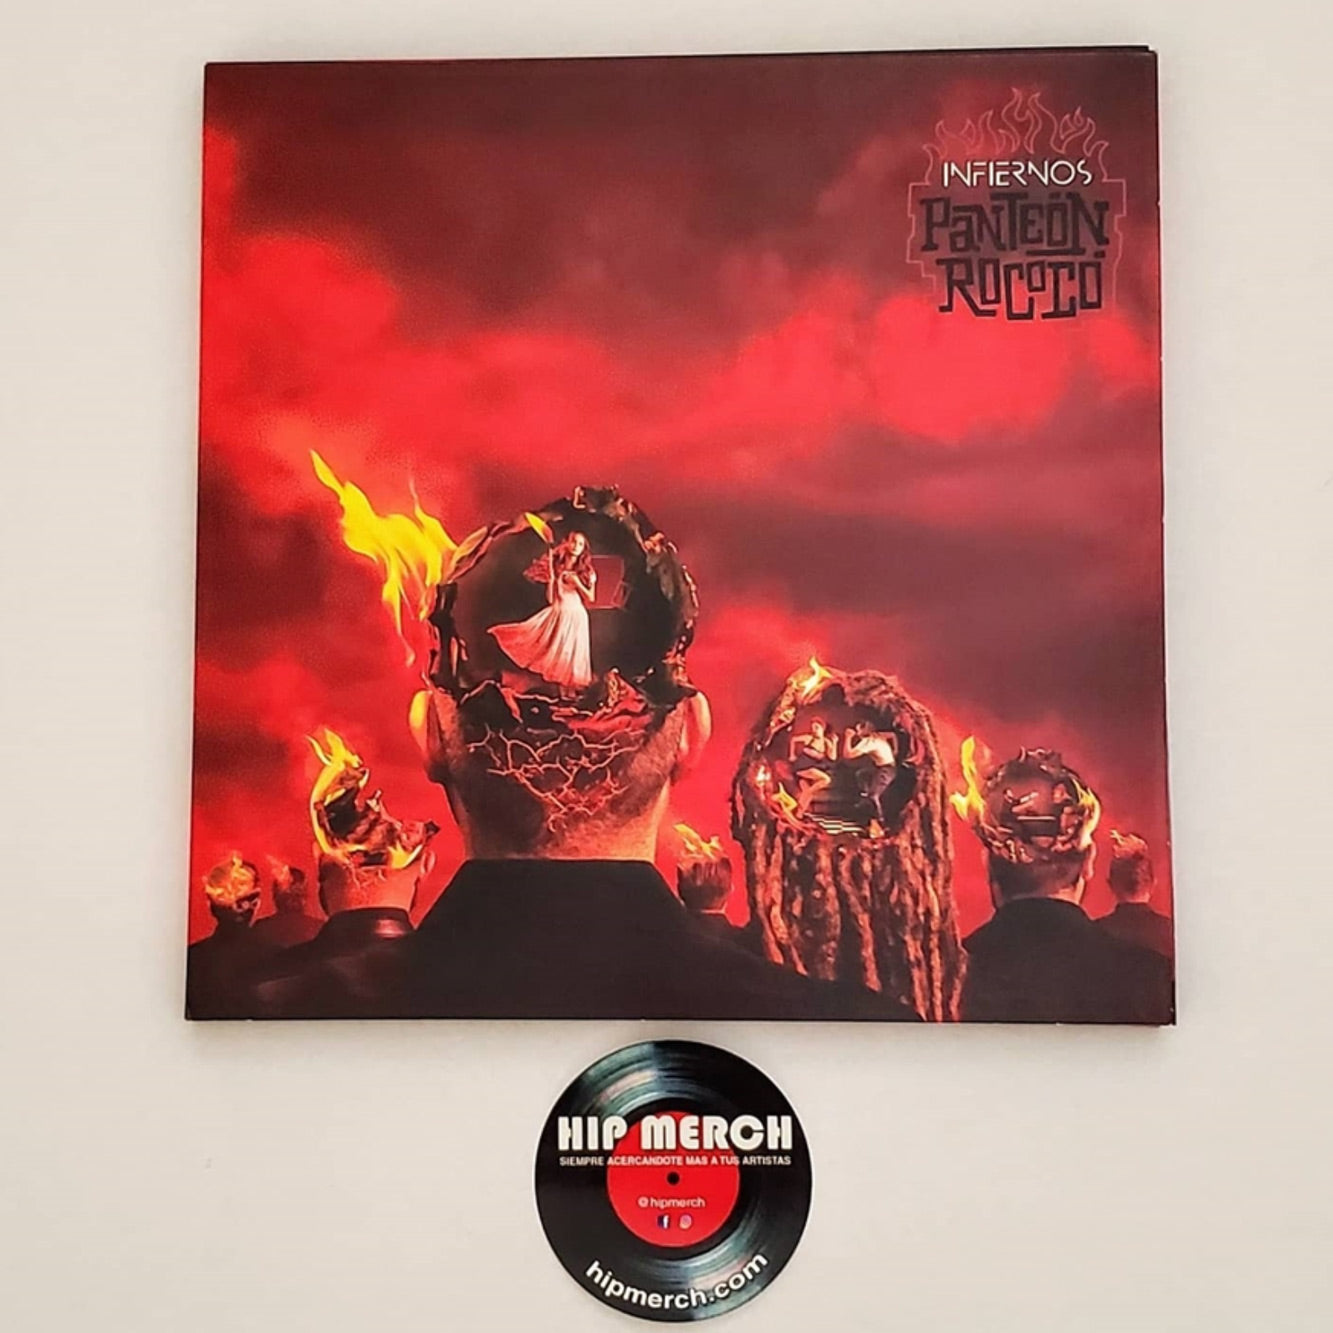 Panteón Rococó - Infiernos - Vinyl - SIGNED!!!!